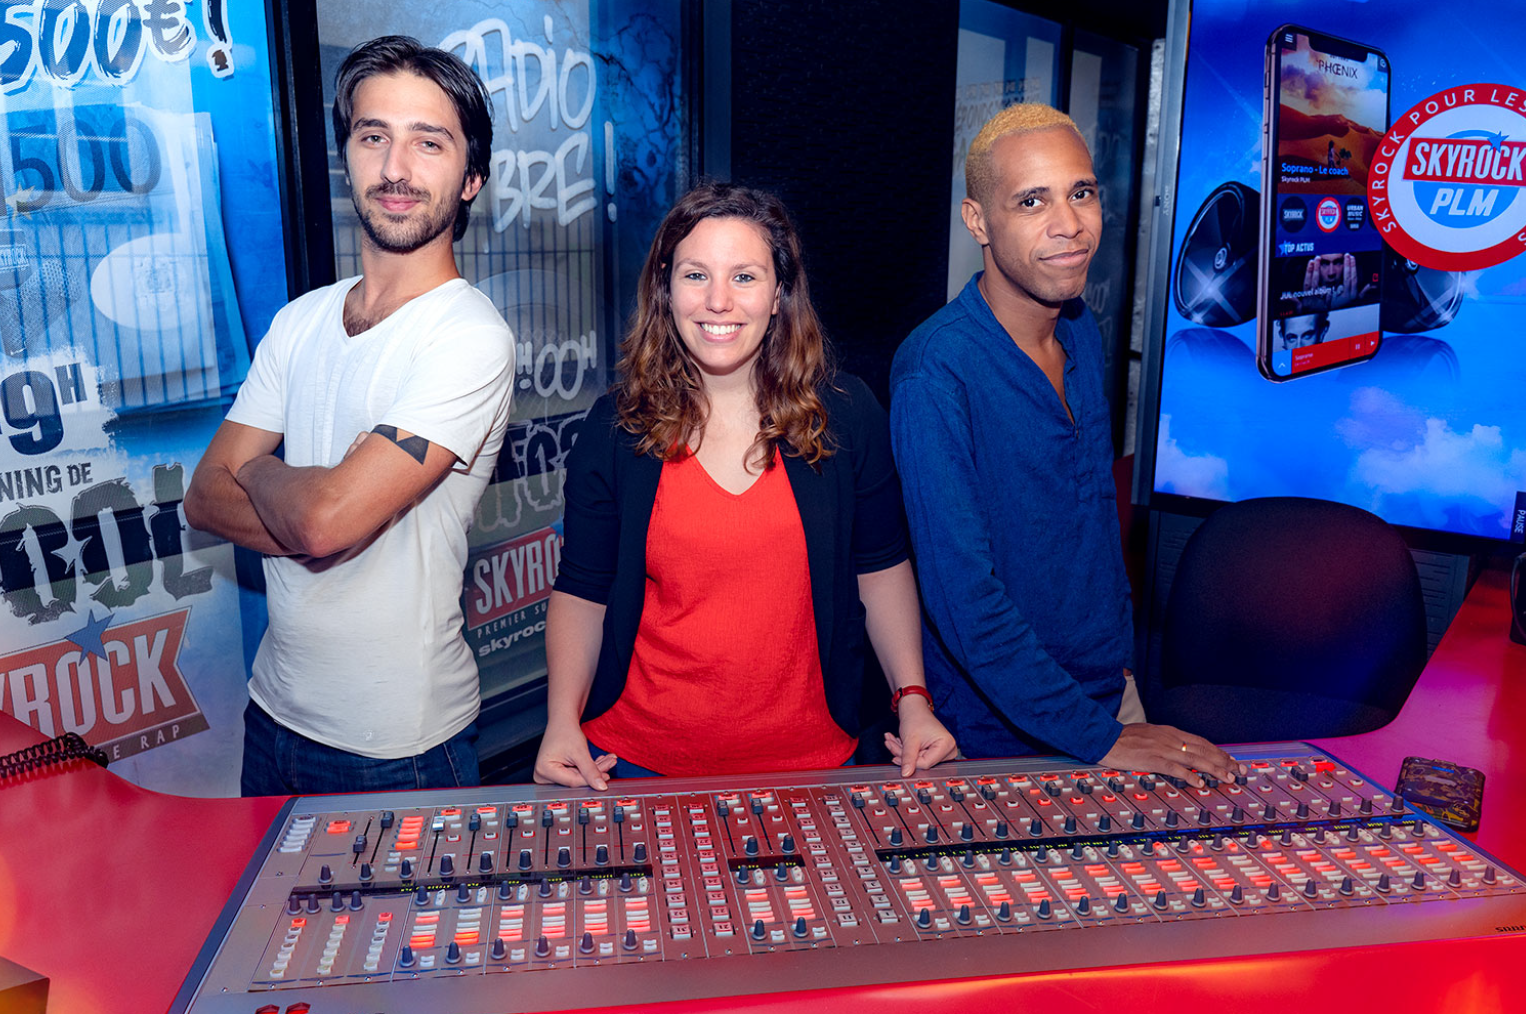 De gauche à droite, les animateurs Skyrock PLM : Antoine, Léa et M’Rik